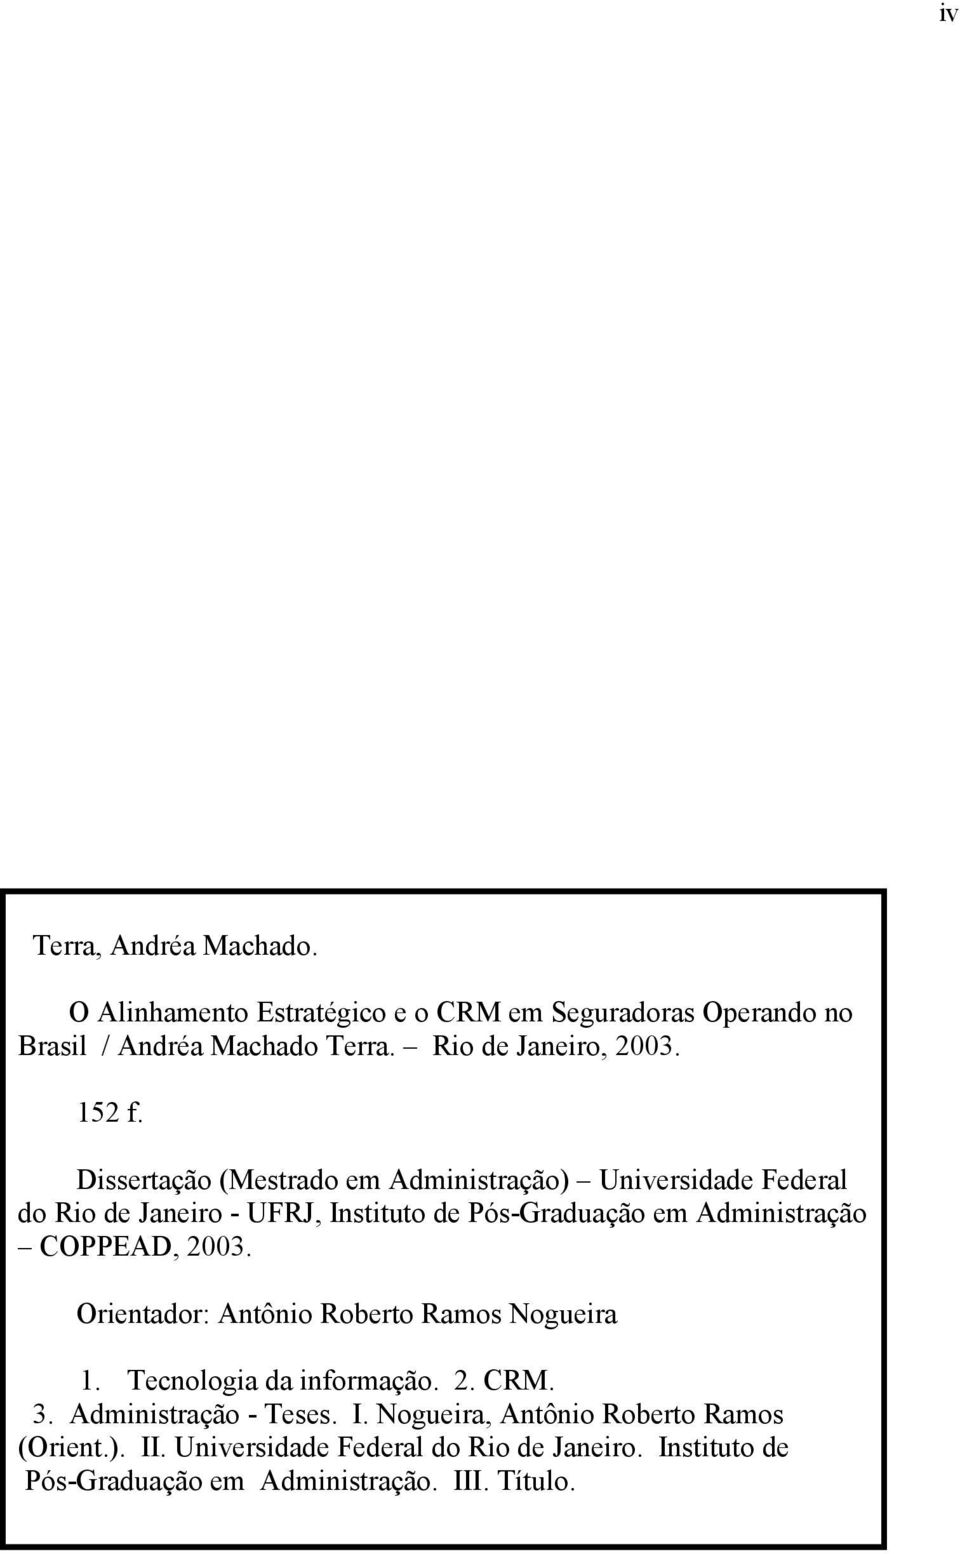 Dissertação (Mestrado em Administração) Universidade Federal do Rio de Janeiro - UFRJ, Instituto de Pós-Graduação em Administração